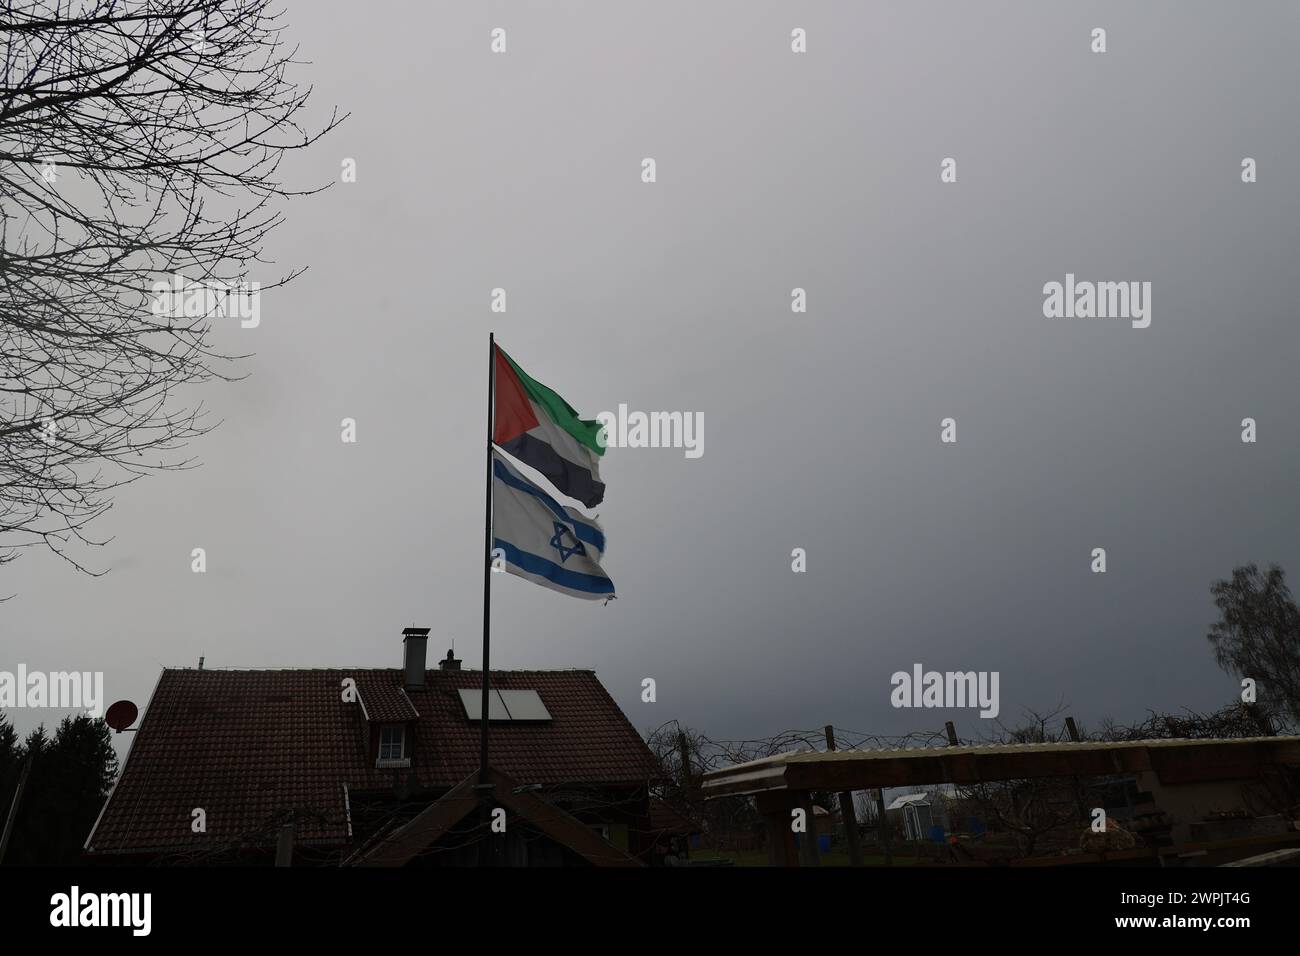 Una bandiera con sopra la parola Israele sta sventolando in aria. Il cielo è nuvoloso e la casa è sullo sfondo Foto Stock